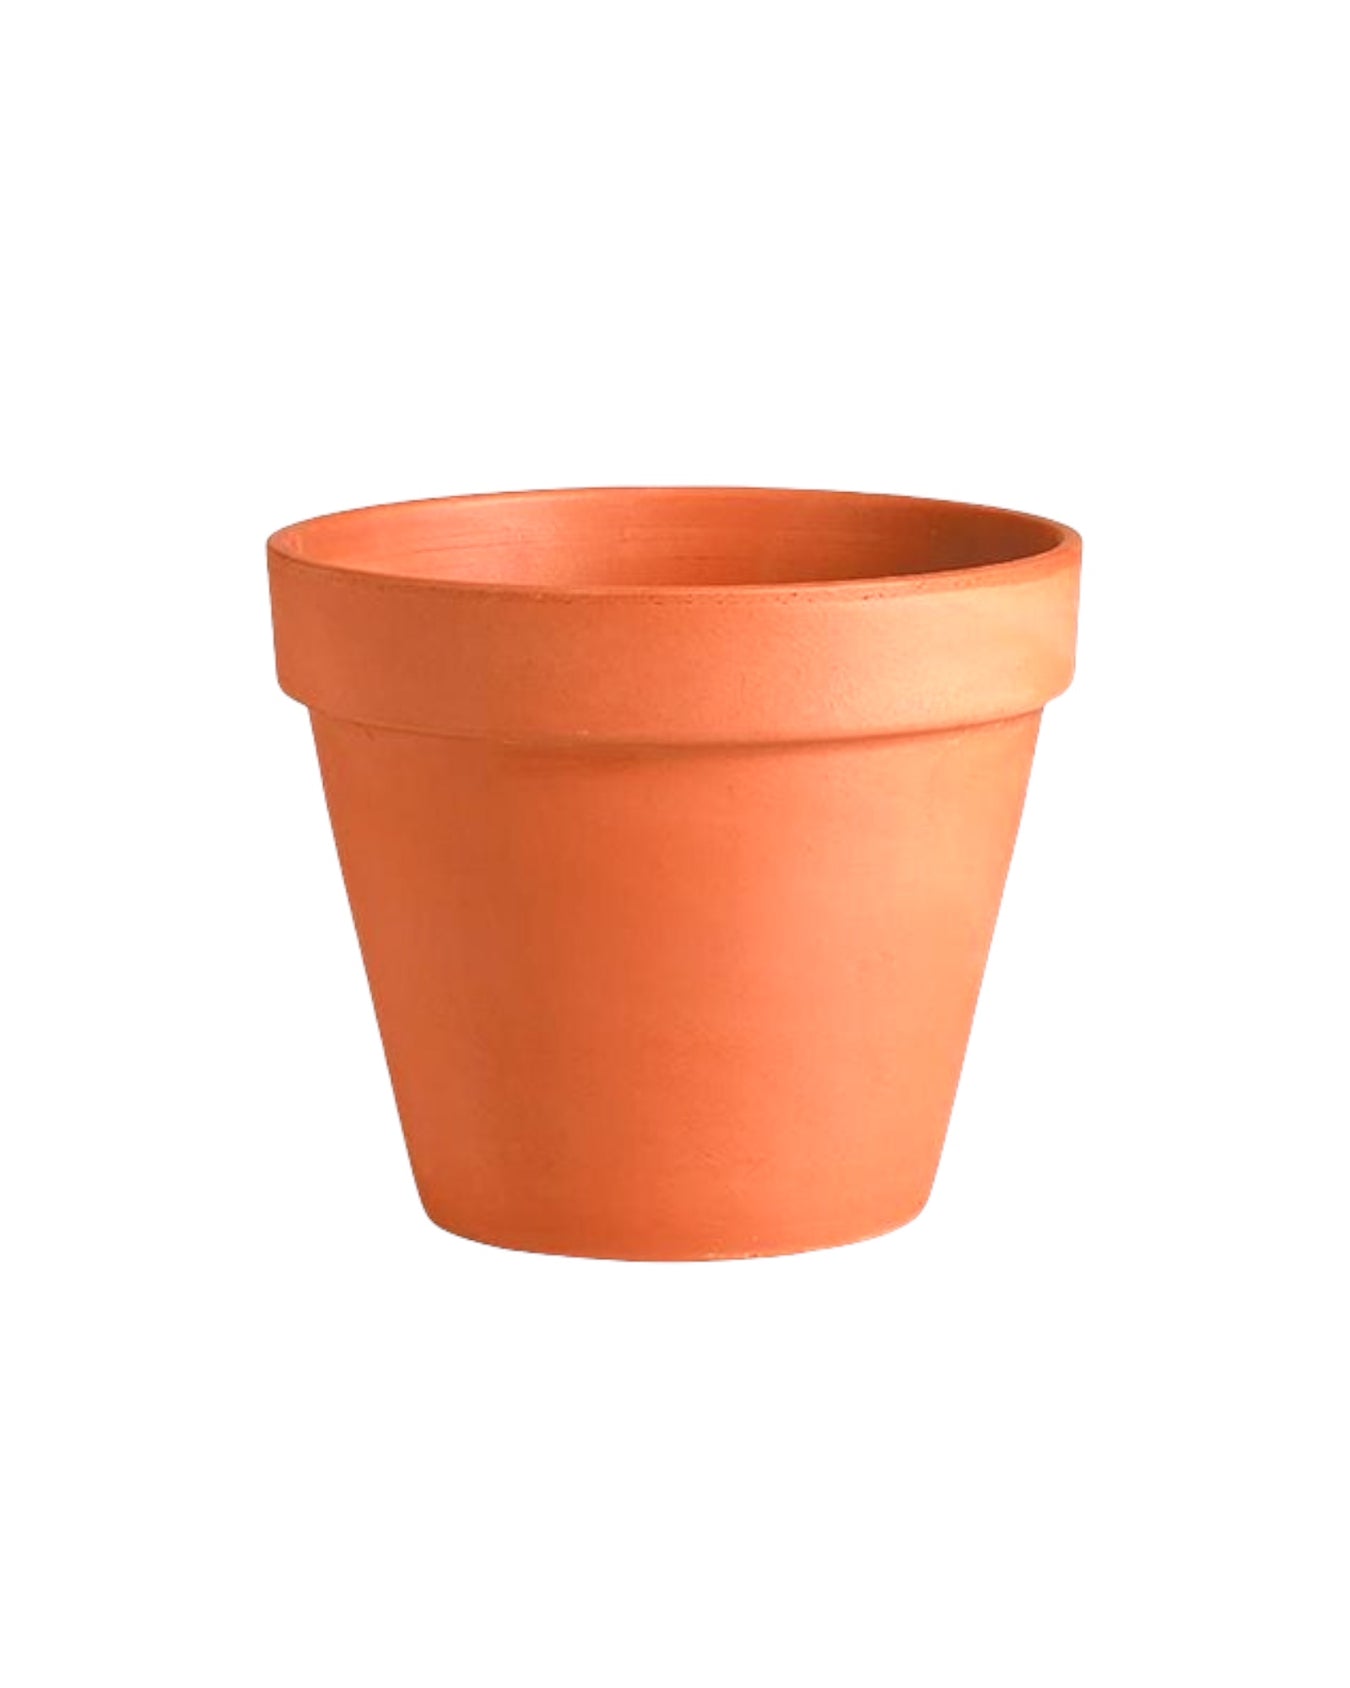 Medium Plant Pots